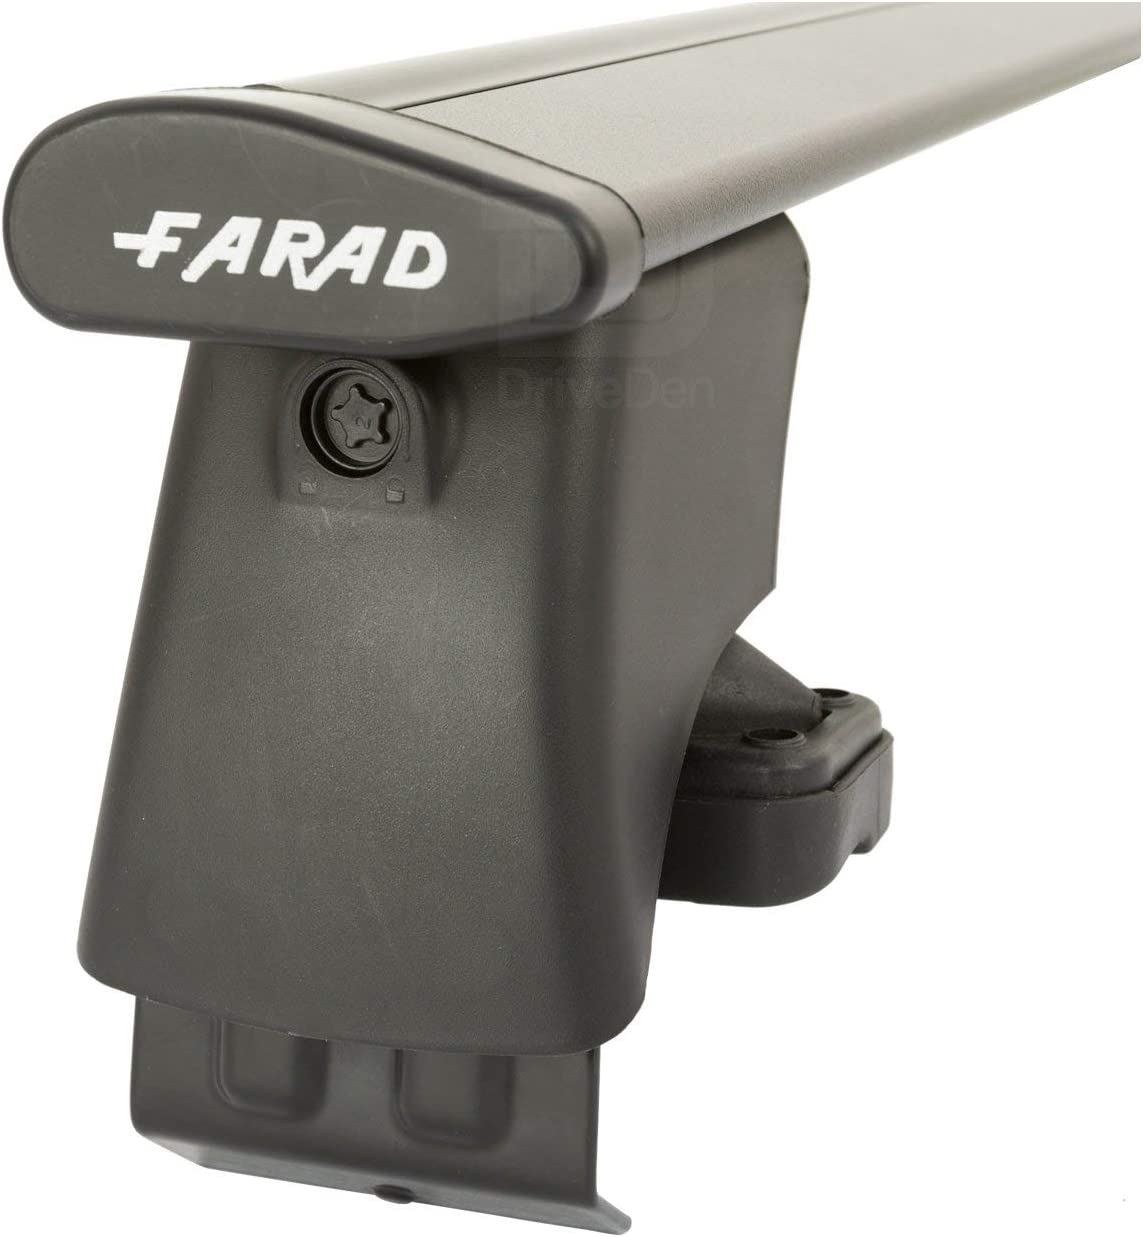 FARAD-Kit H2 per barre portatutto - Kia Venga 2010> (senza corrimano)